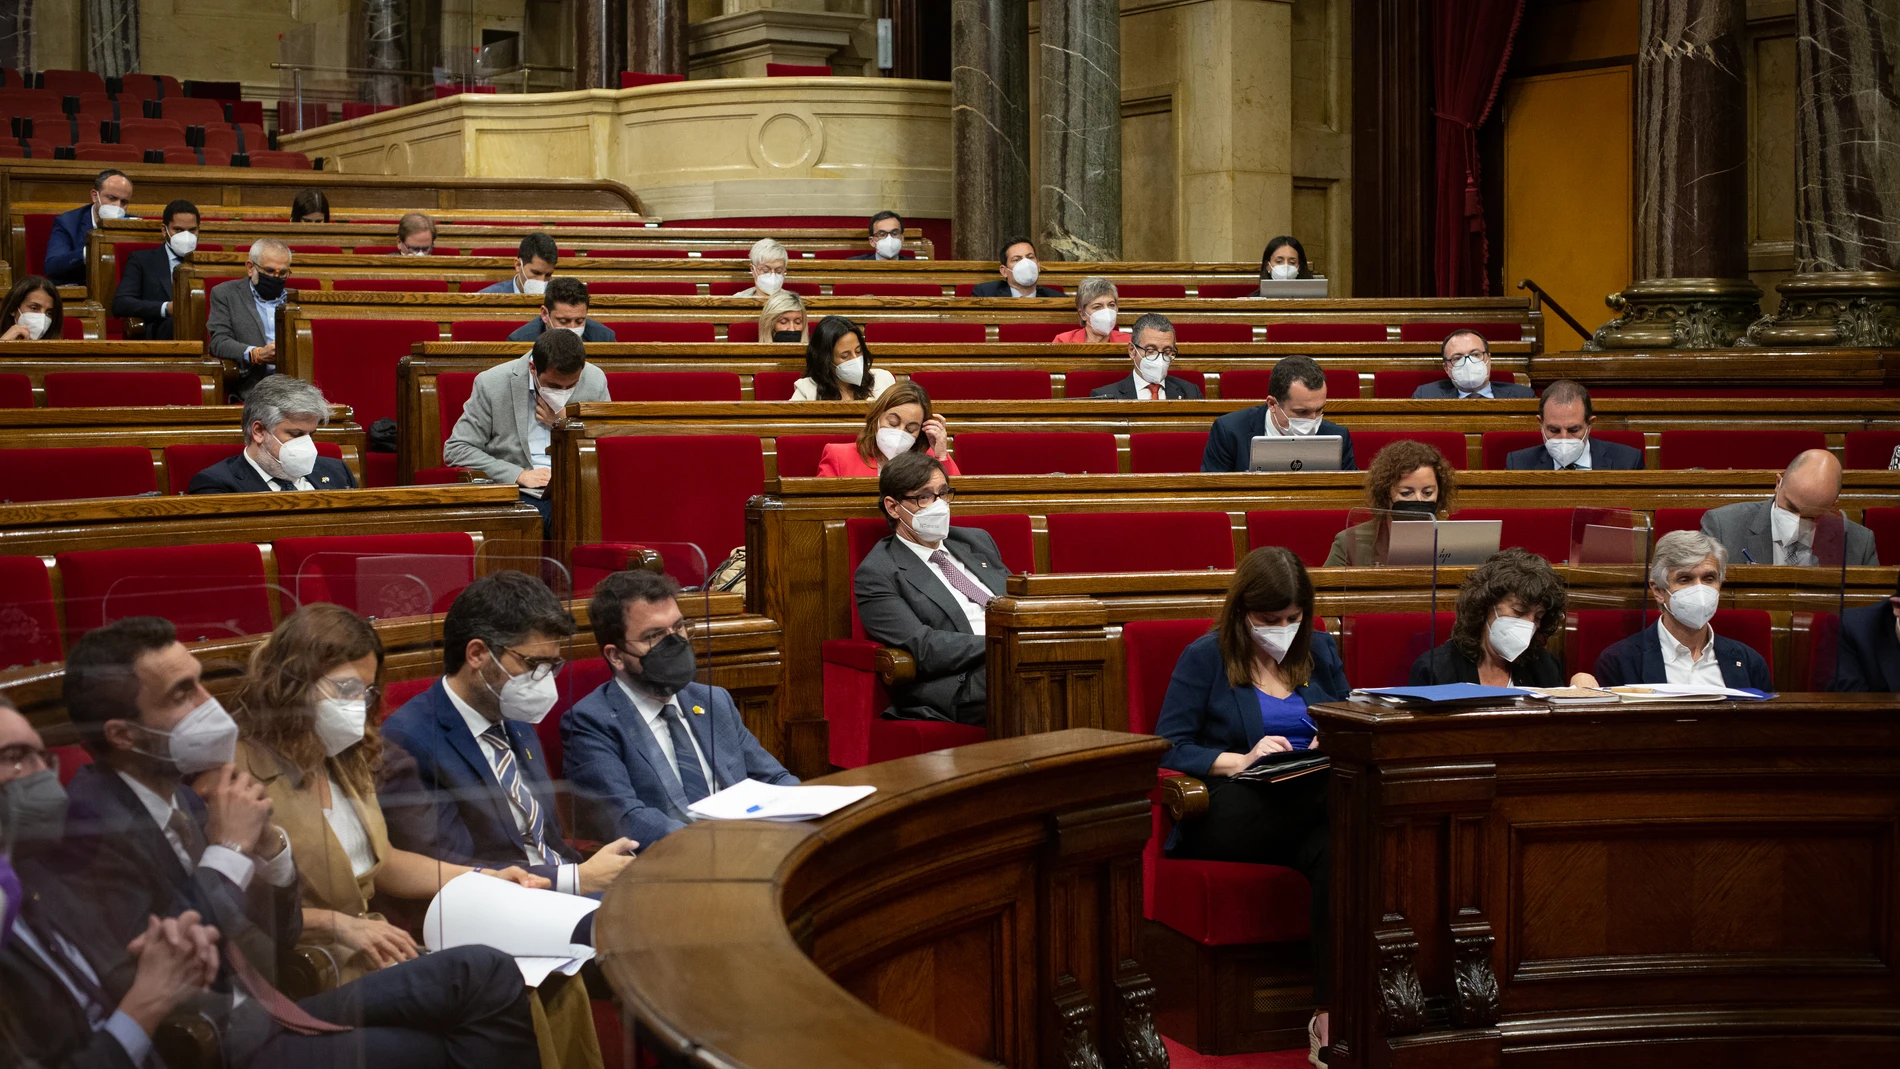 Componentes del nuevo Govern durante la primera sesión de control del nuevo Ejecutivo, a 2 de junio de 2021, en el Parlament de Catalunya, Barcelona, (España). Durante esta sesión, marcada por la presentación de los miembros de su nuevo Govern, han debatido sobre el cambio de numeración de las legislaturas y sobre las comisiones legislativas que habrá en esta legislatura y su composición.02 JUNIO 2021;GOVERN;PARLAMENT;CATALUÑA;NUEVO GOBIERNO;CATALUNYADavid Zorrakino / Europa Press02/06/2021